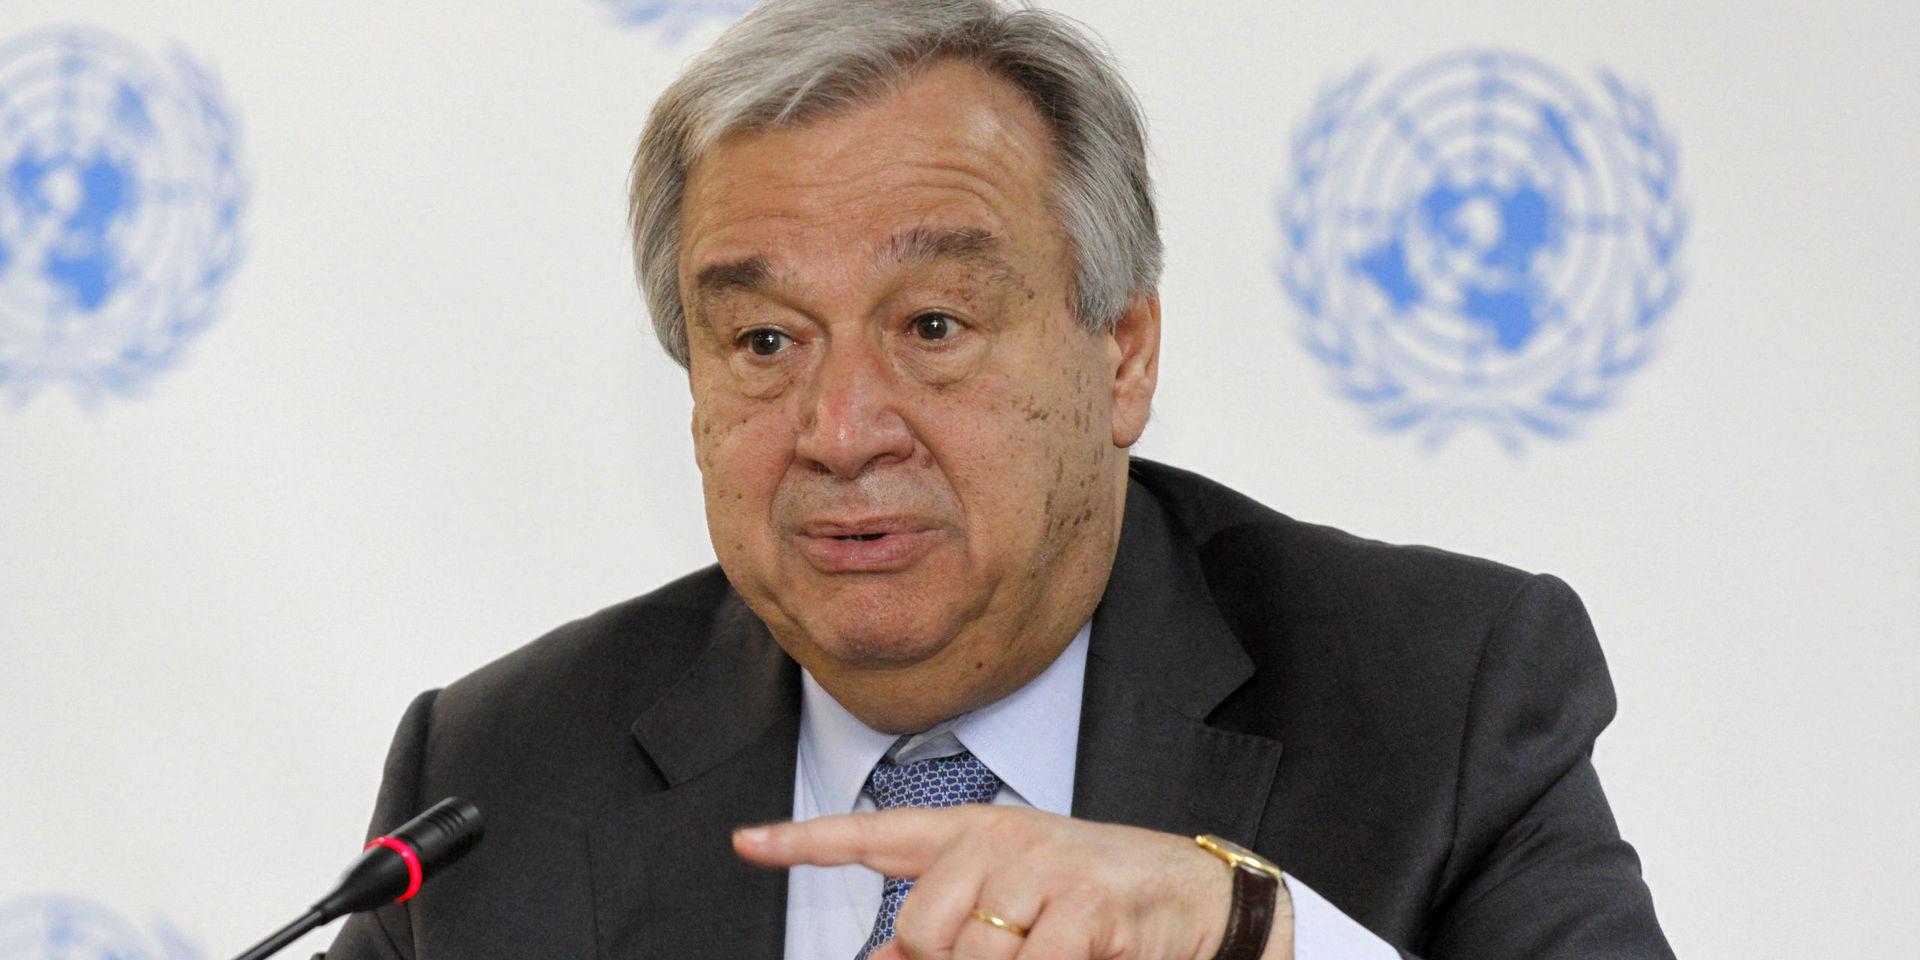 FN:s generalsekreterare António Guterres. Arkivbild.